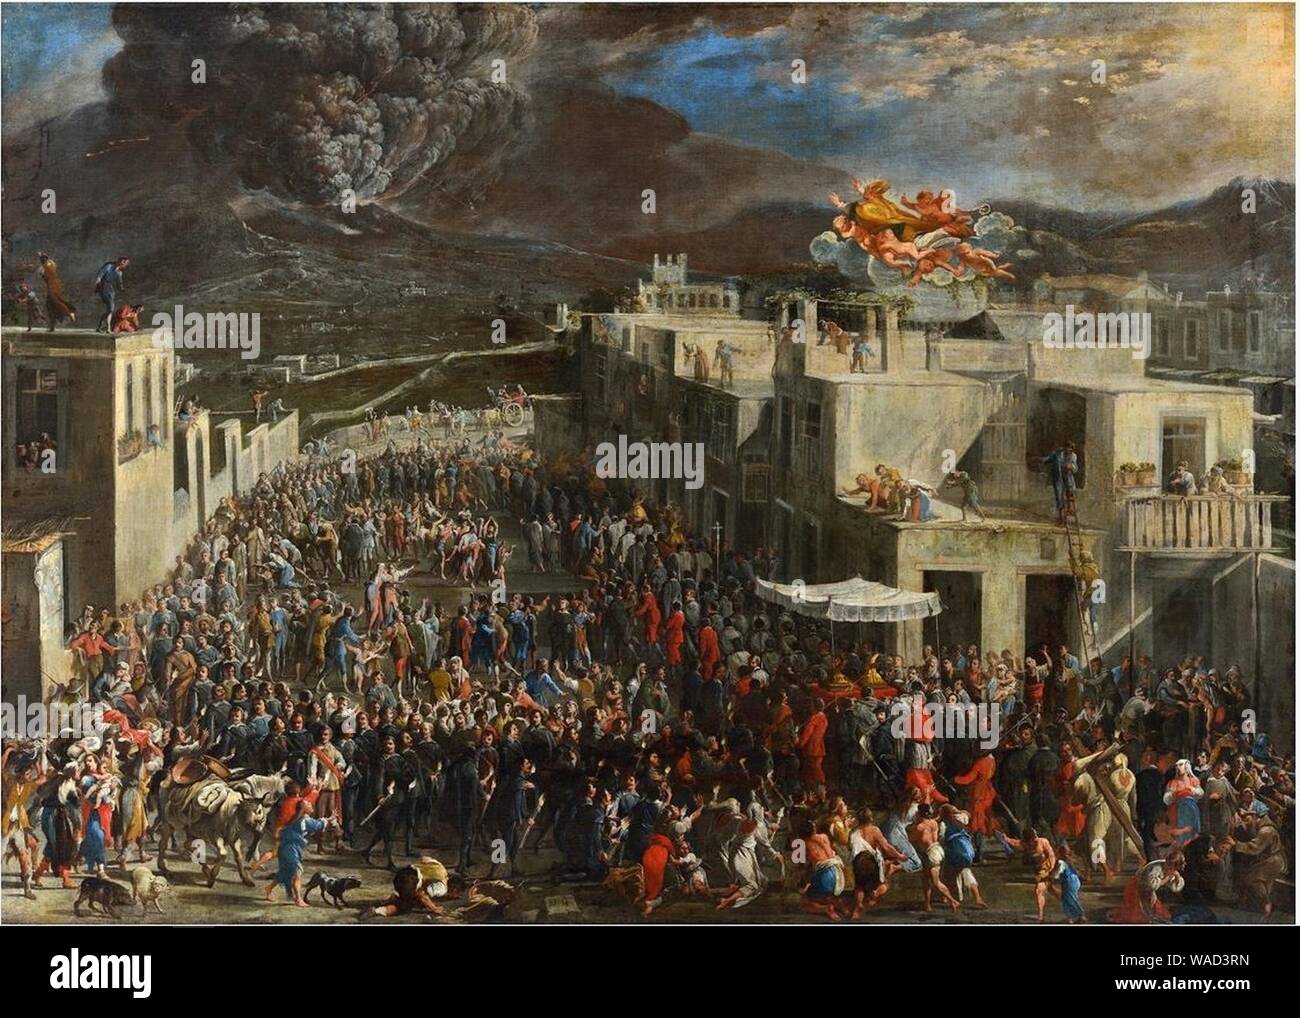 Domenico Gargiulo - The eruption of the Vesuvius in 1631. Stock Photo